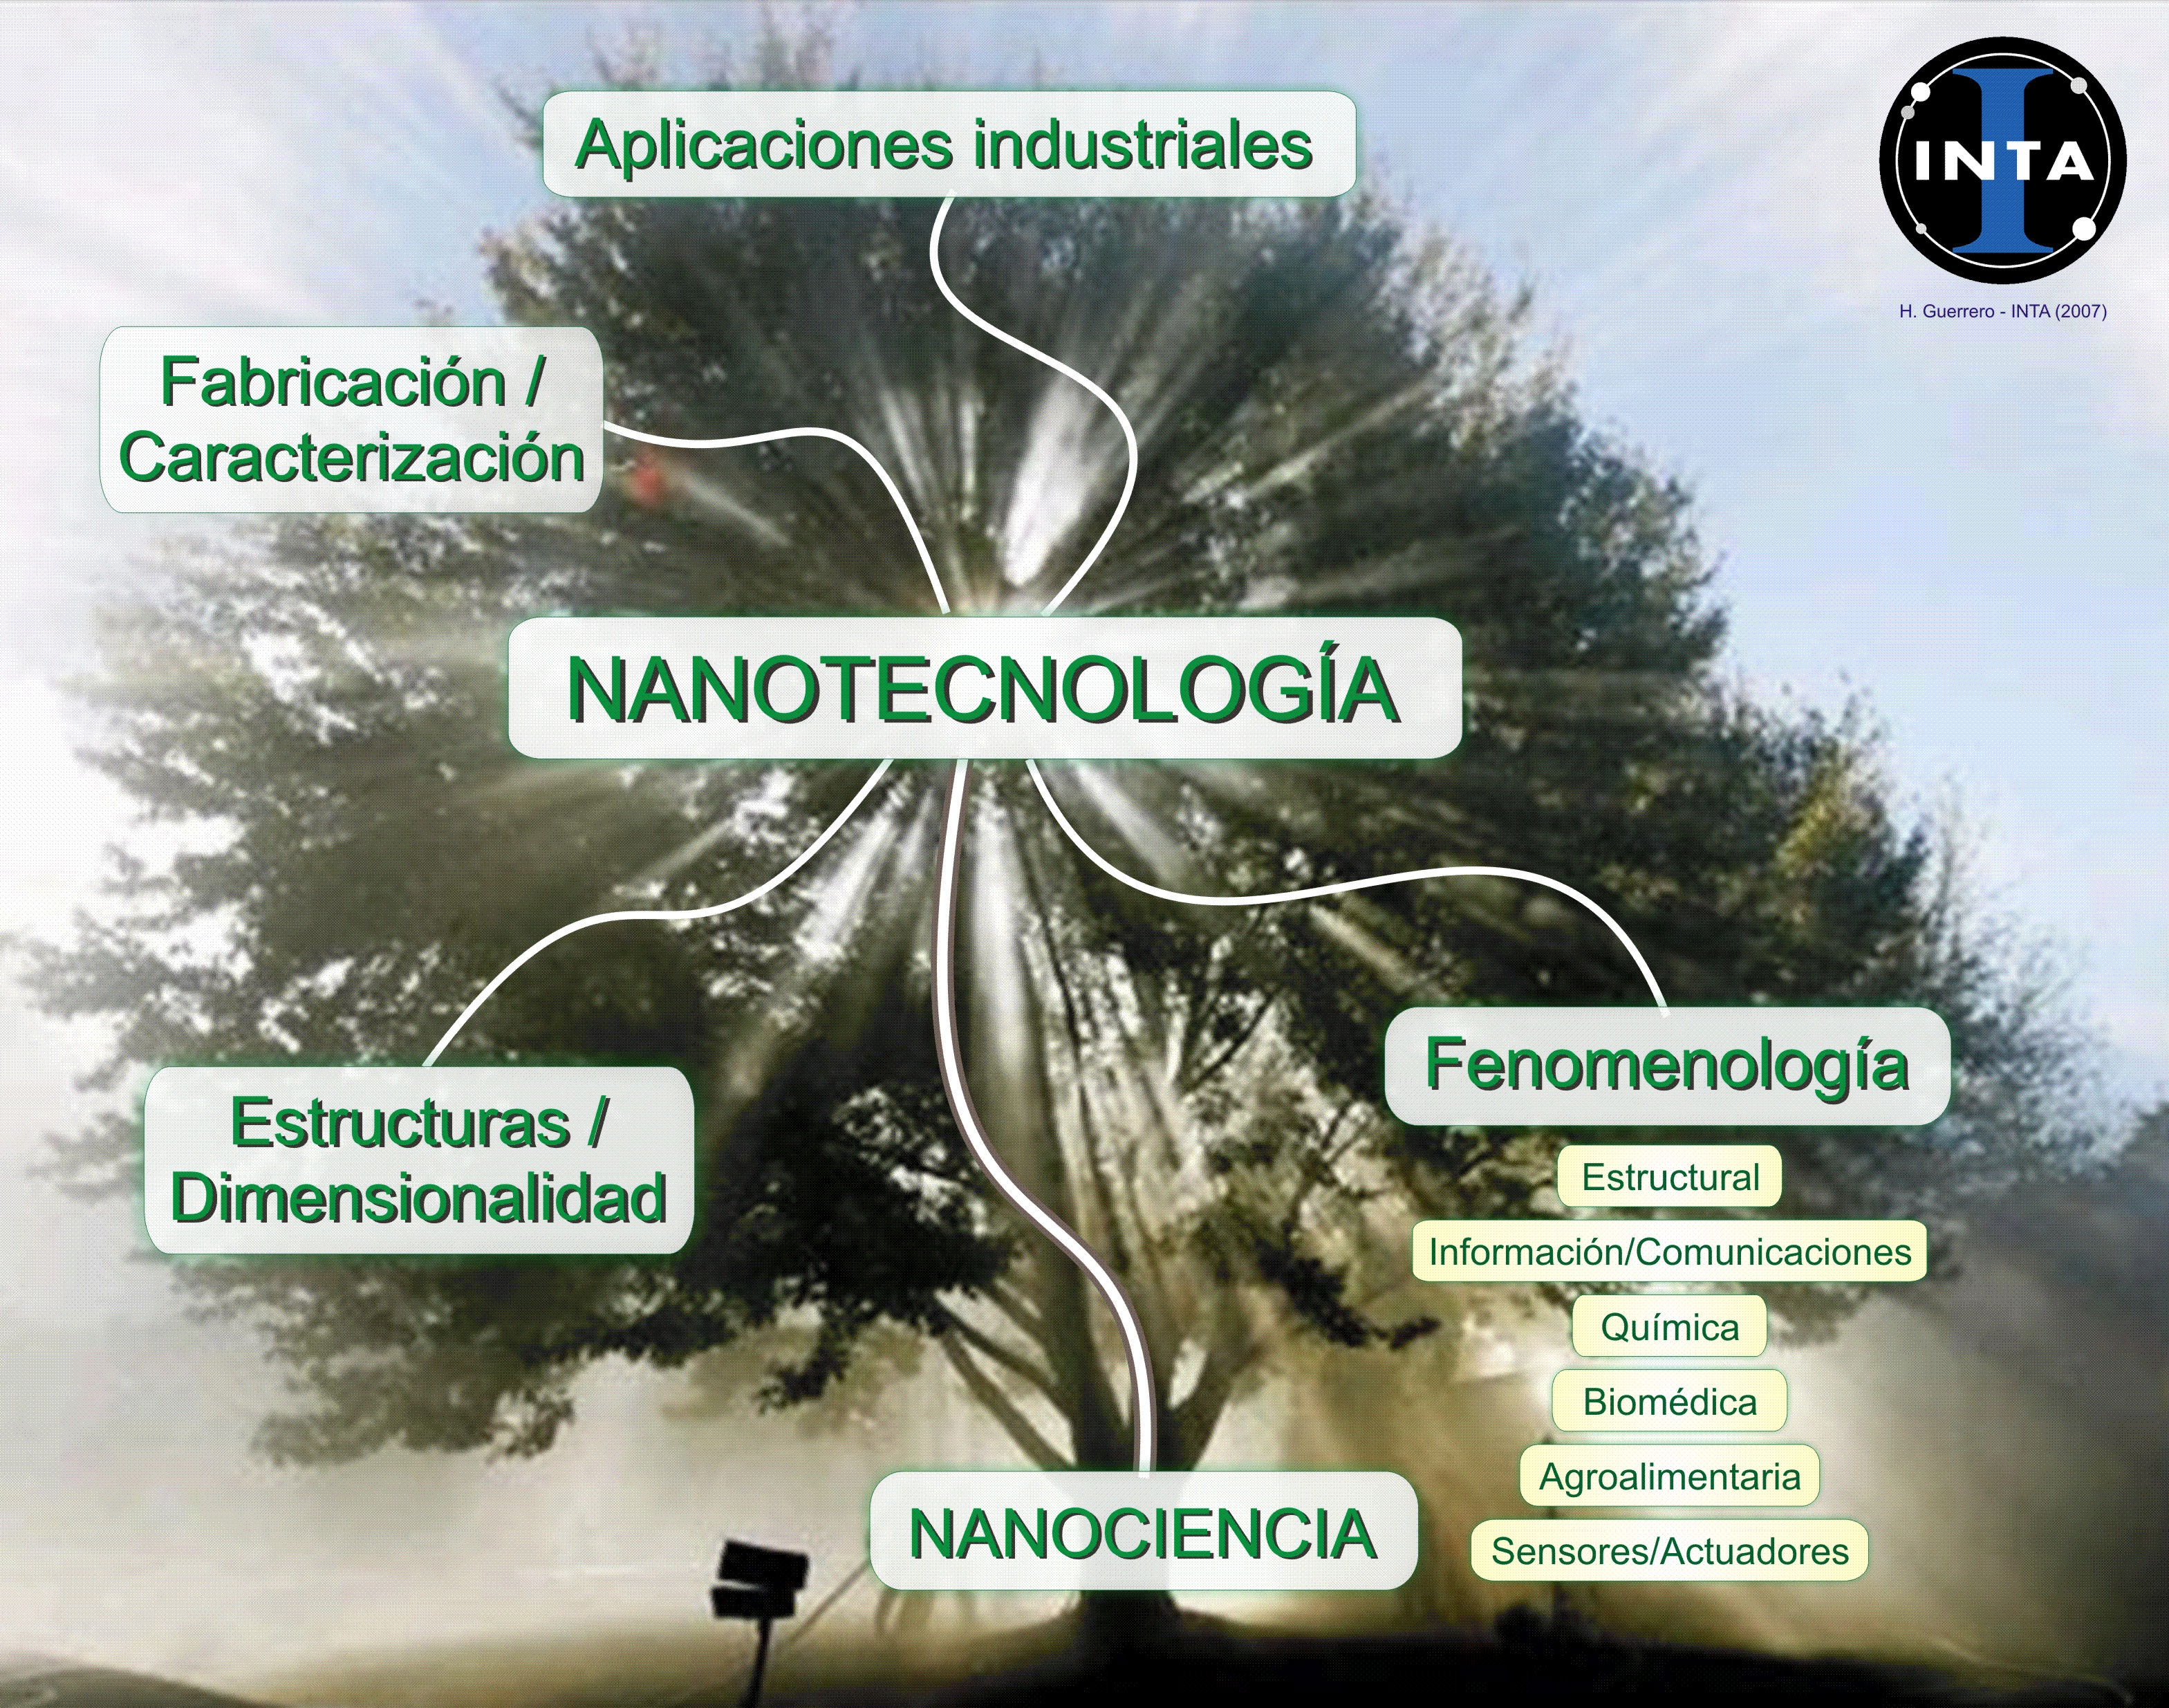 El arbol del conocimiento de la Nanotecnología